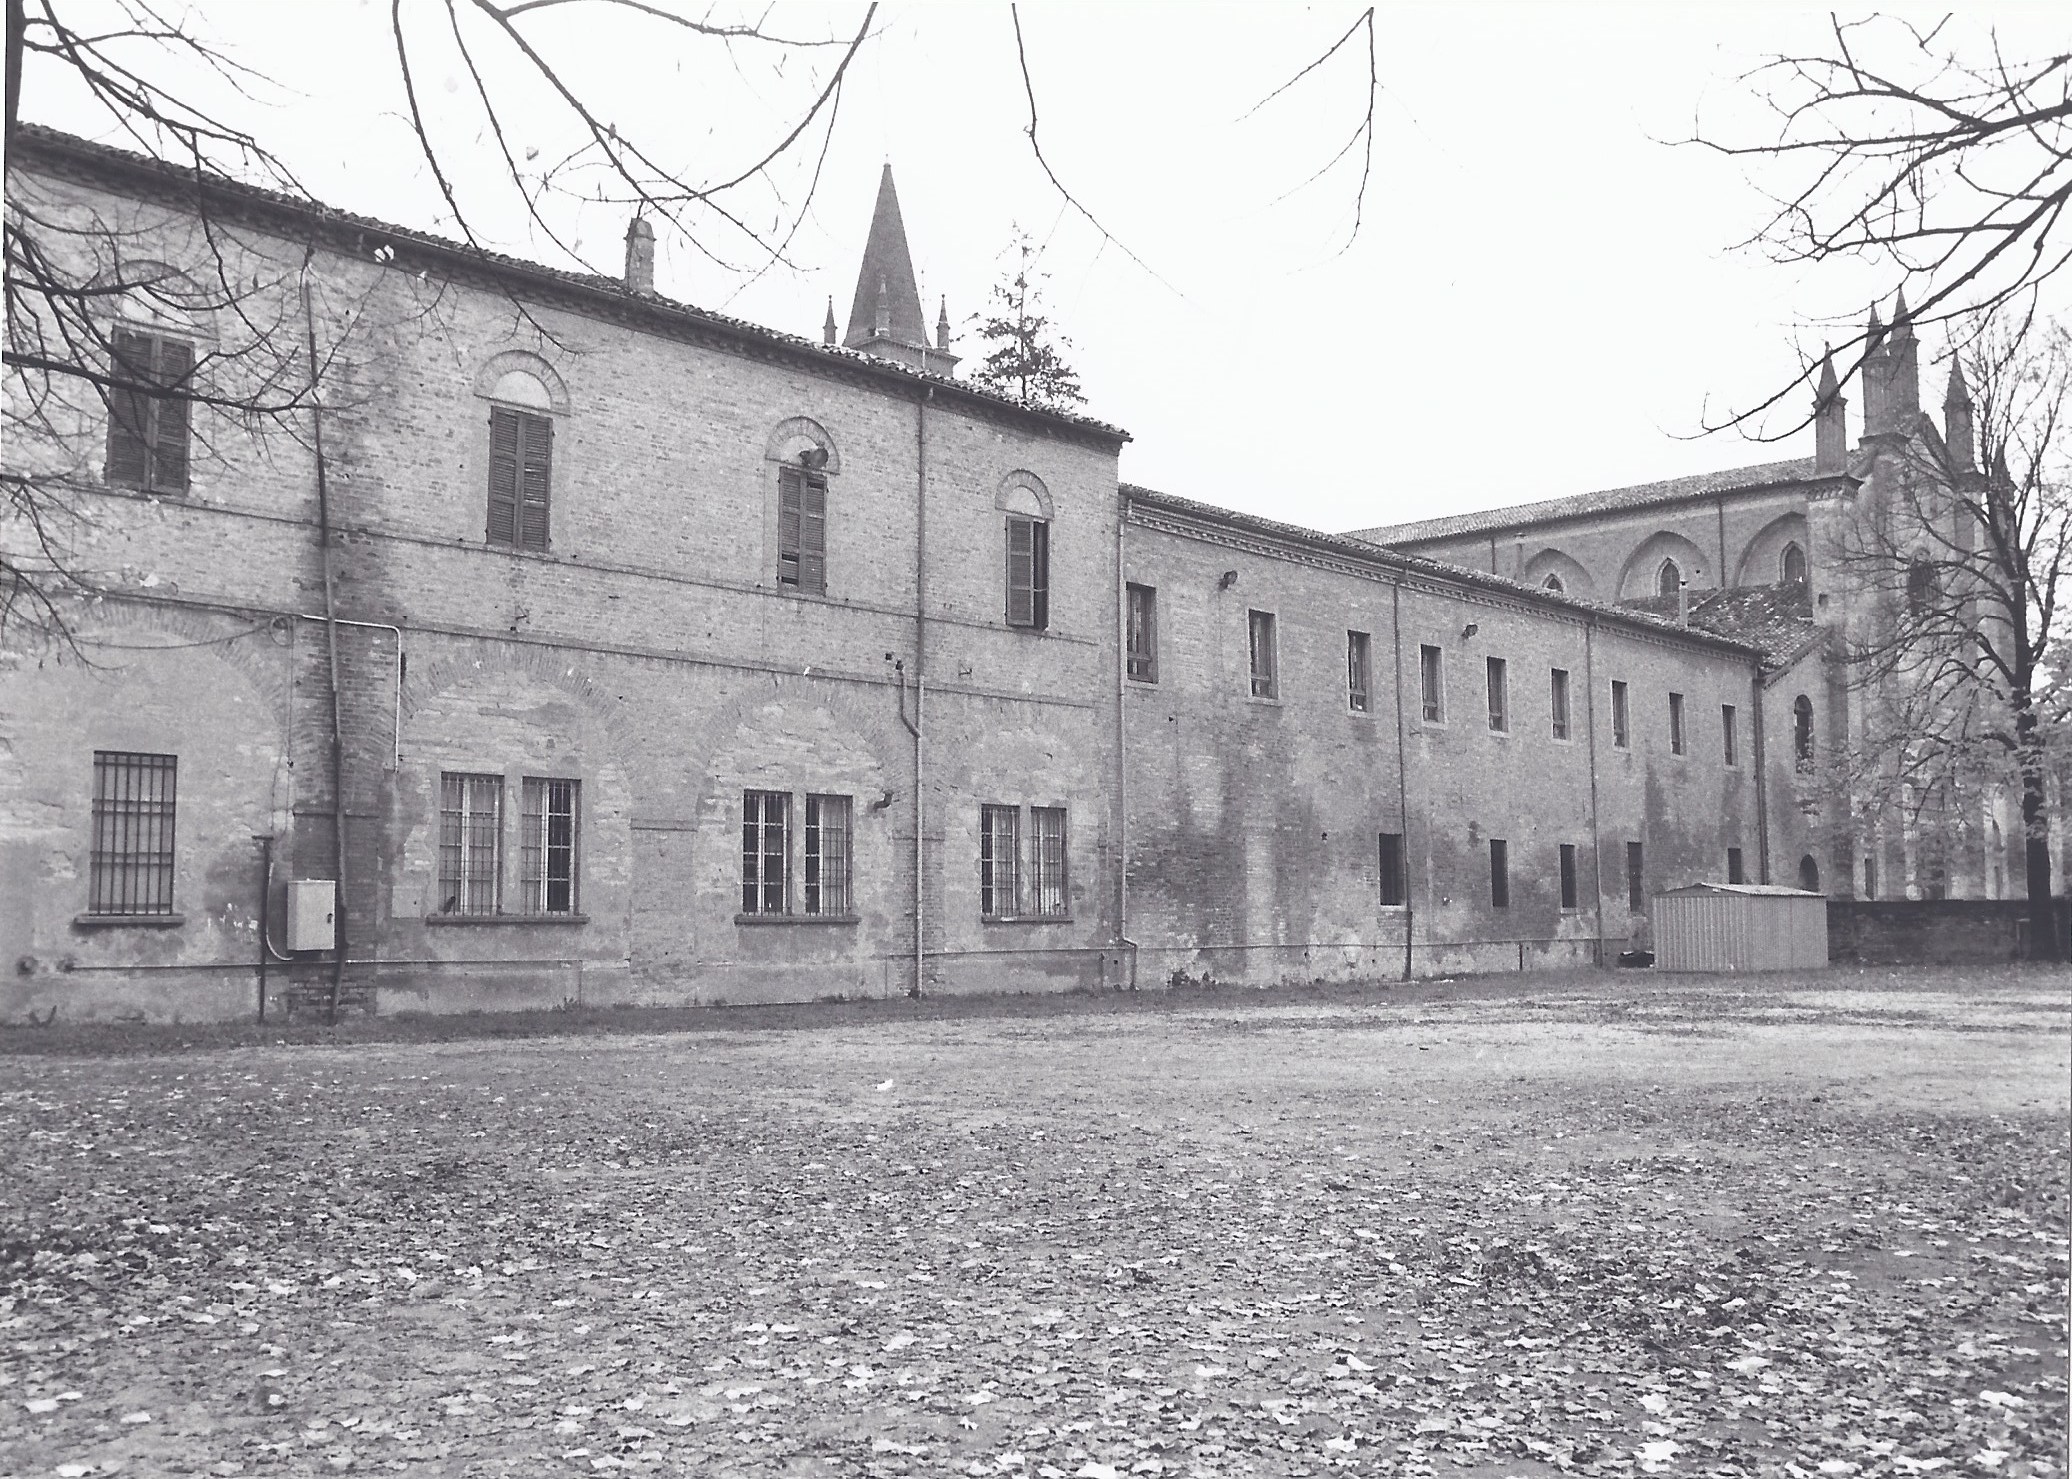 Convento di San Francesco (convento) - Cortemaggiore (PC)  (XV, fine)